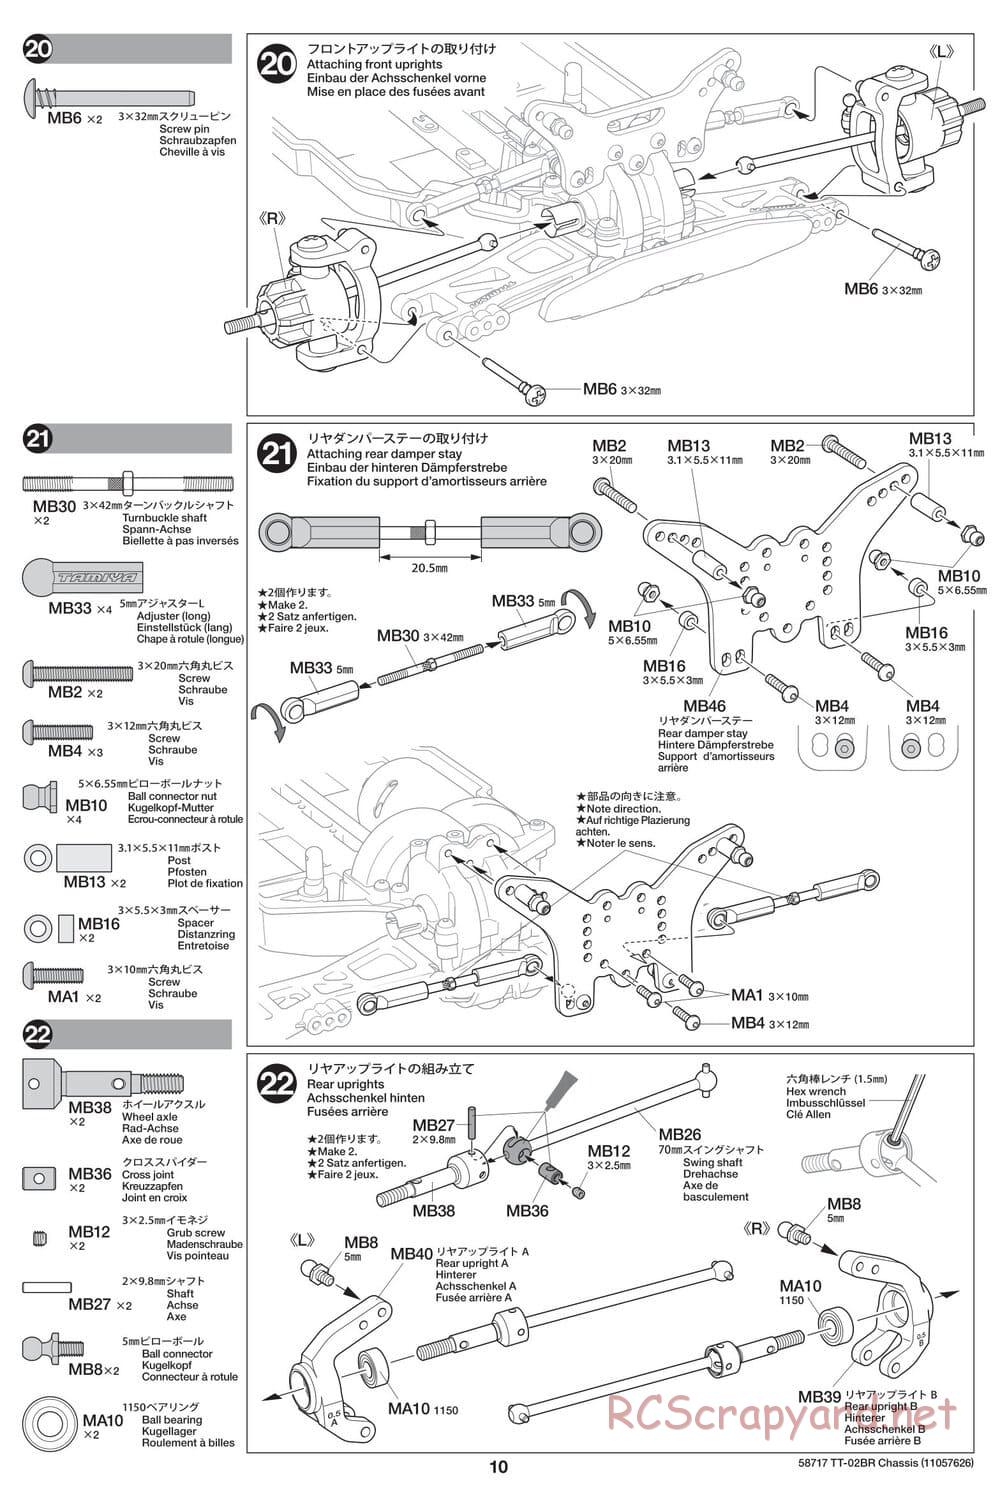 Tamiya - TT-02BR Chassis - Manual - Page 10